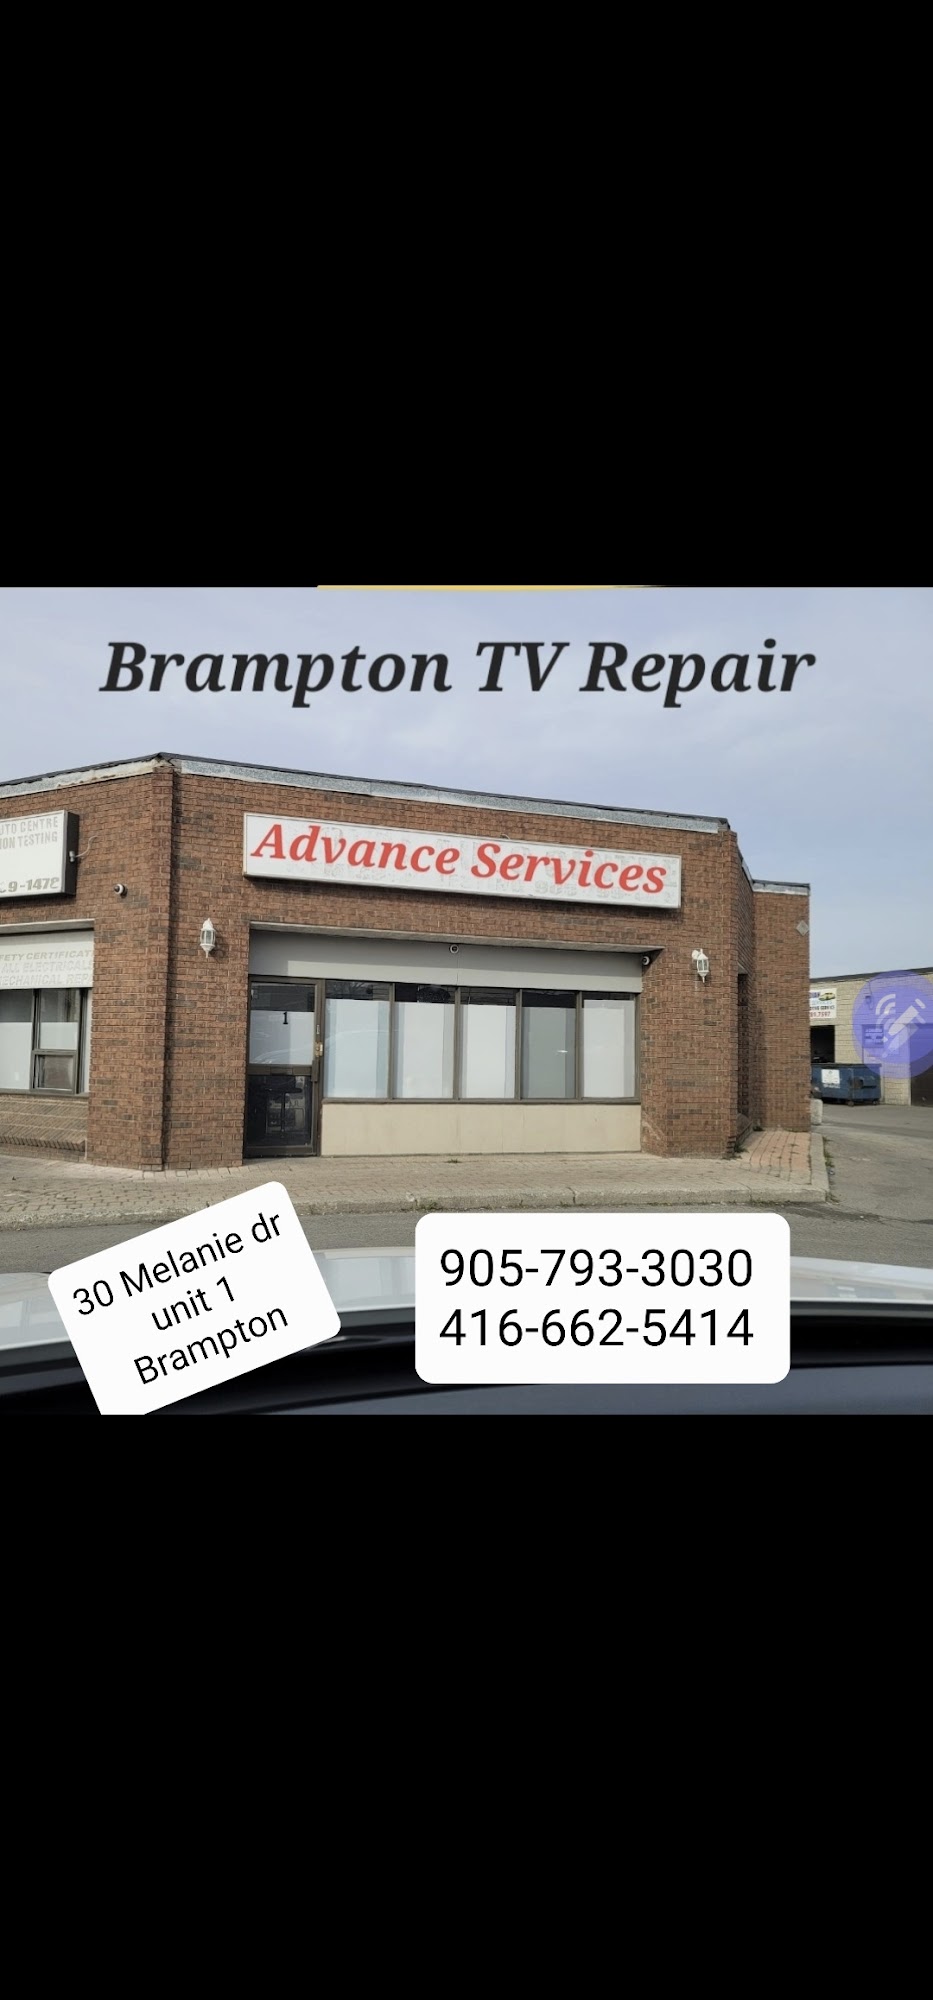 Advance Services - TV Repair Shop